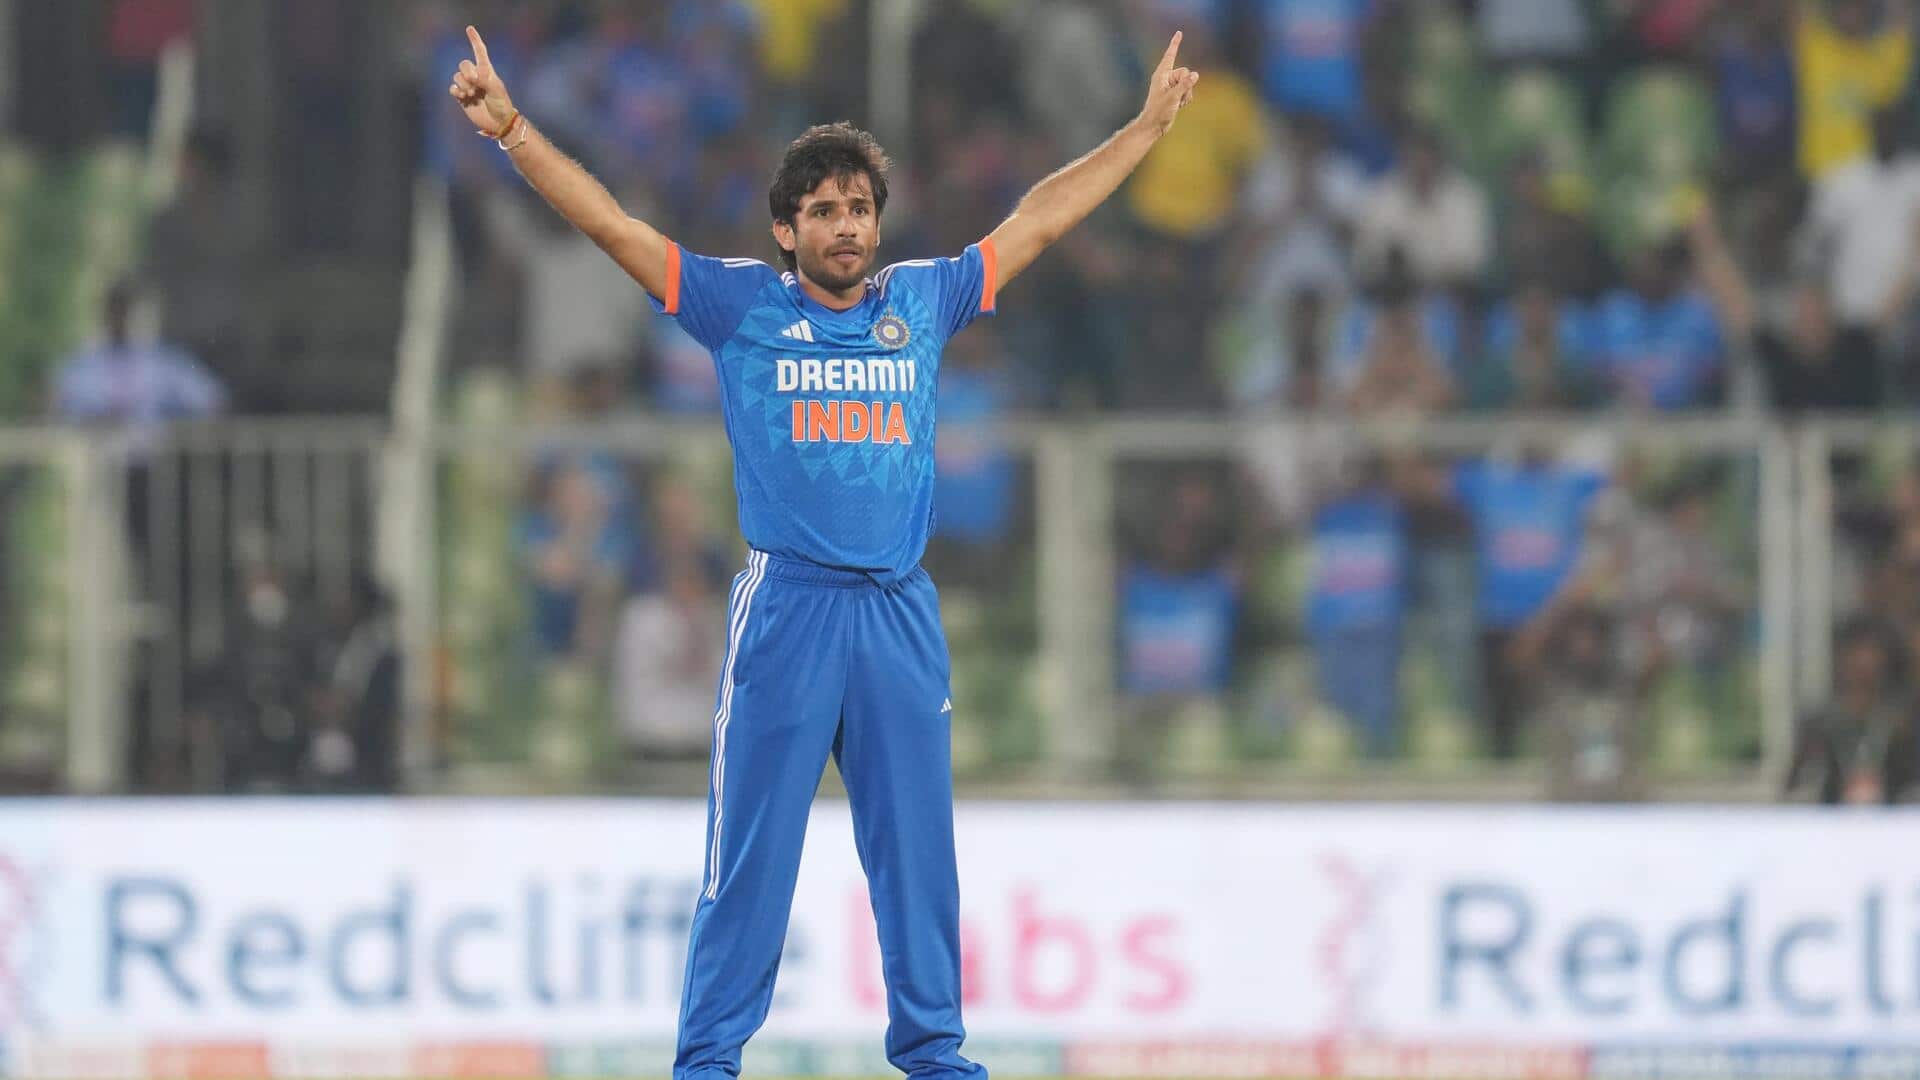 भारत बनाम ऑस्ट्रेलिया: रवि बिश्नोई ने चटकाए 3 विकेट, जानिए उनके आंकड़े